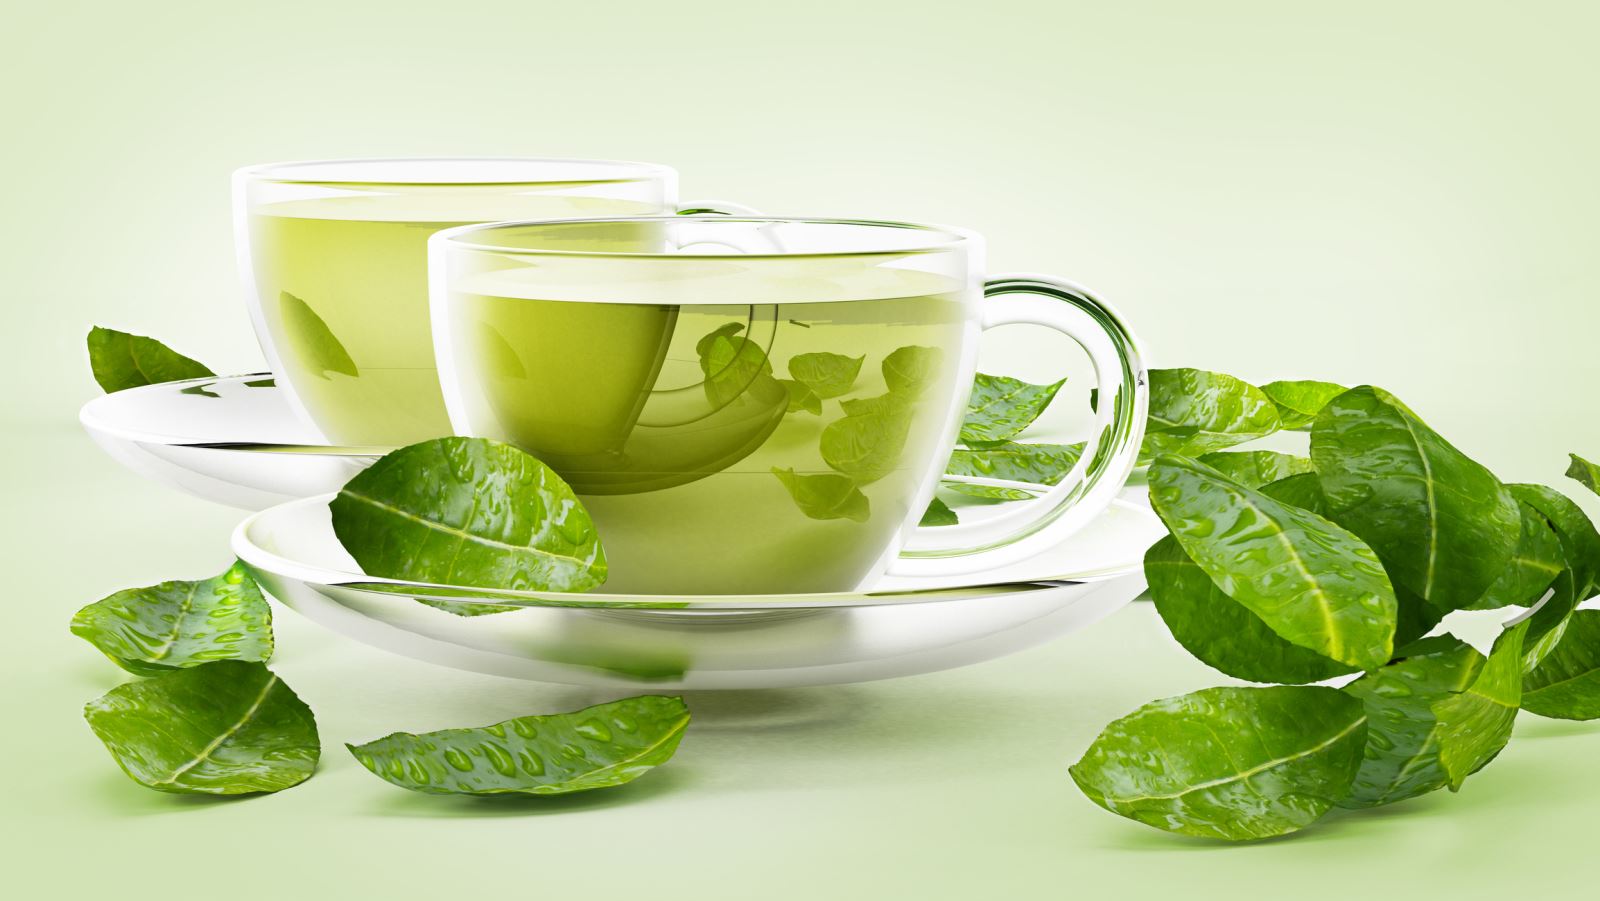 25% tinh chất dưỡng bên trong lá trà xanh là catechin - dưỡng chất giúp chống nắng hiệu quả